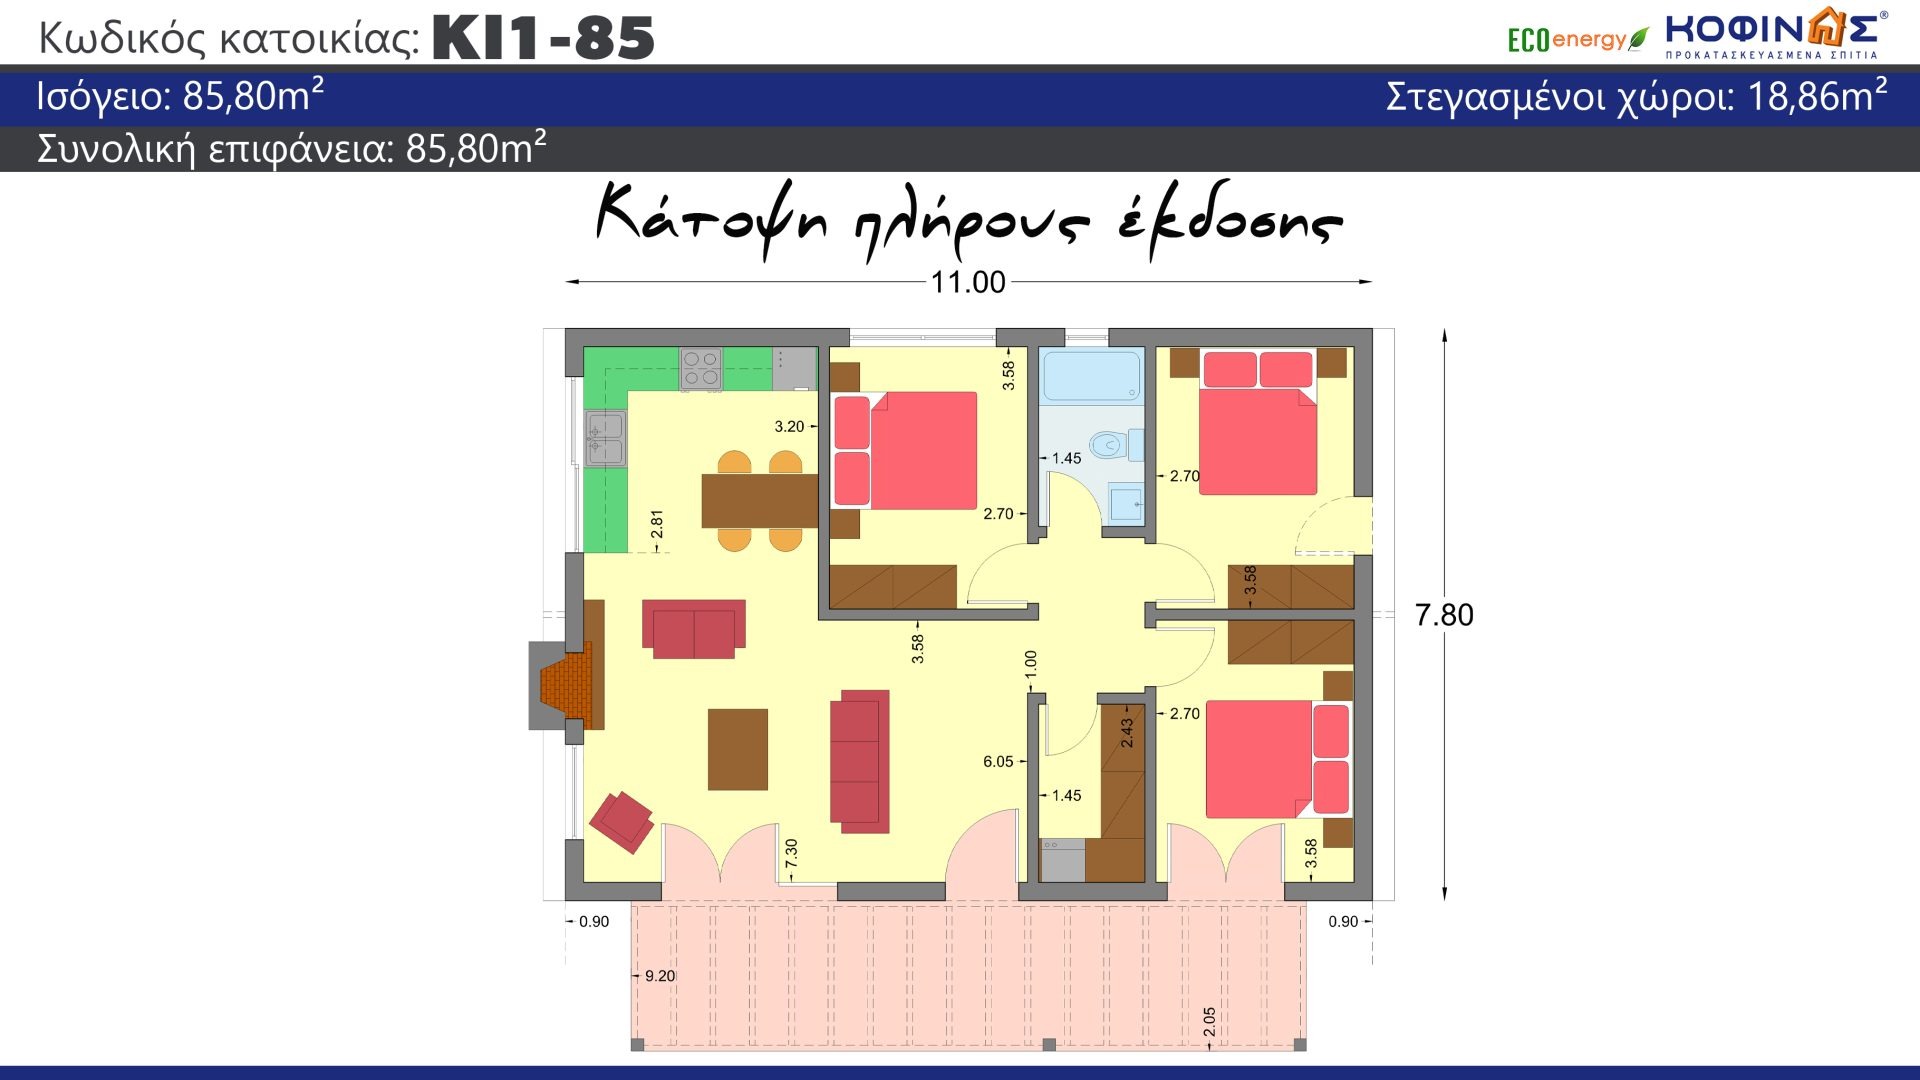 Ισόγεια Κατοικία KI1-85 συνολικής επιφάνειας 85,80 τ.μ., στεγασμένοι χώροι 18,86 τ.μ